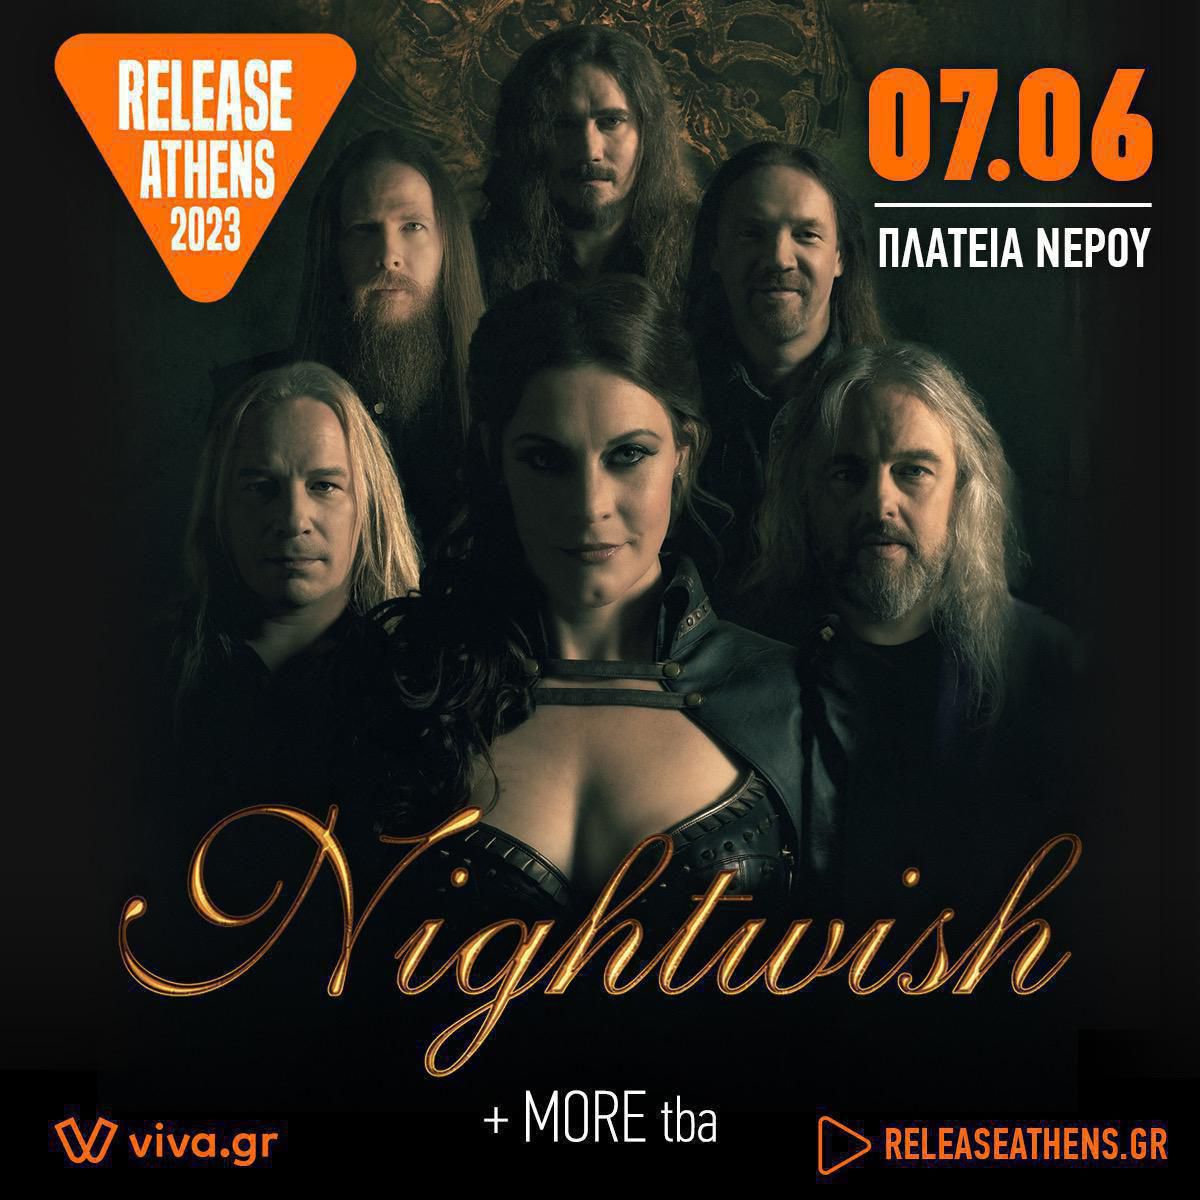 Nightwish social post